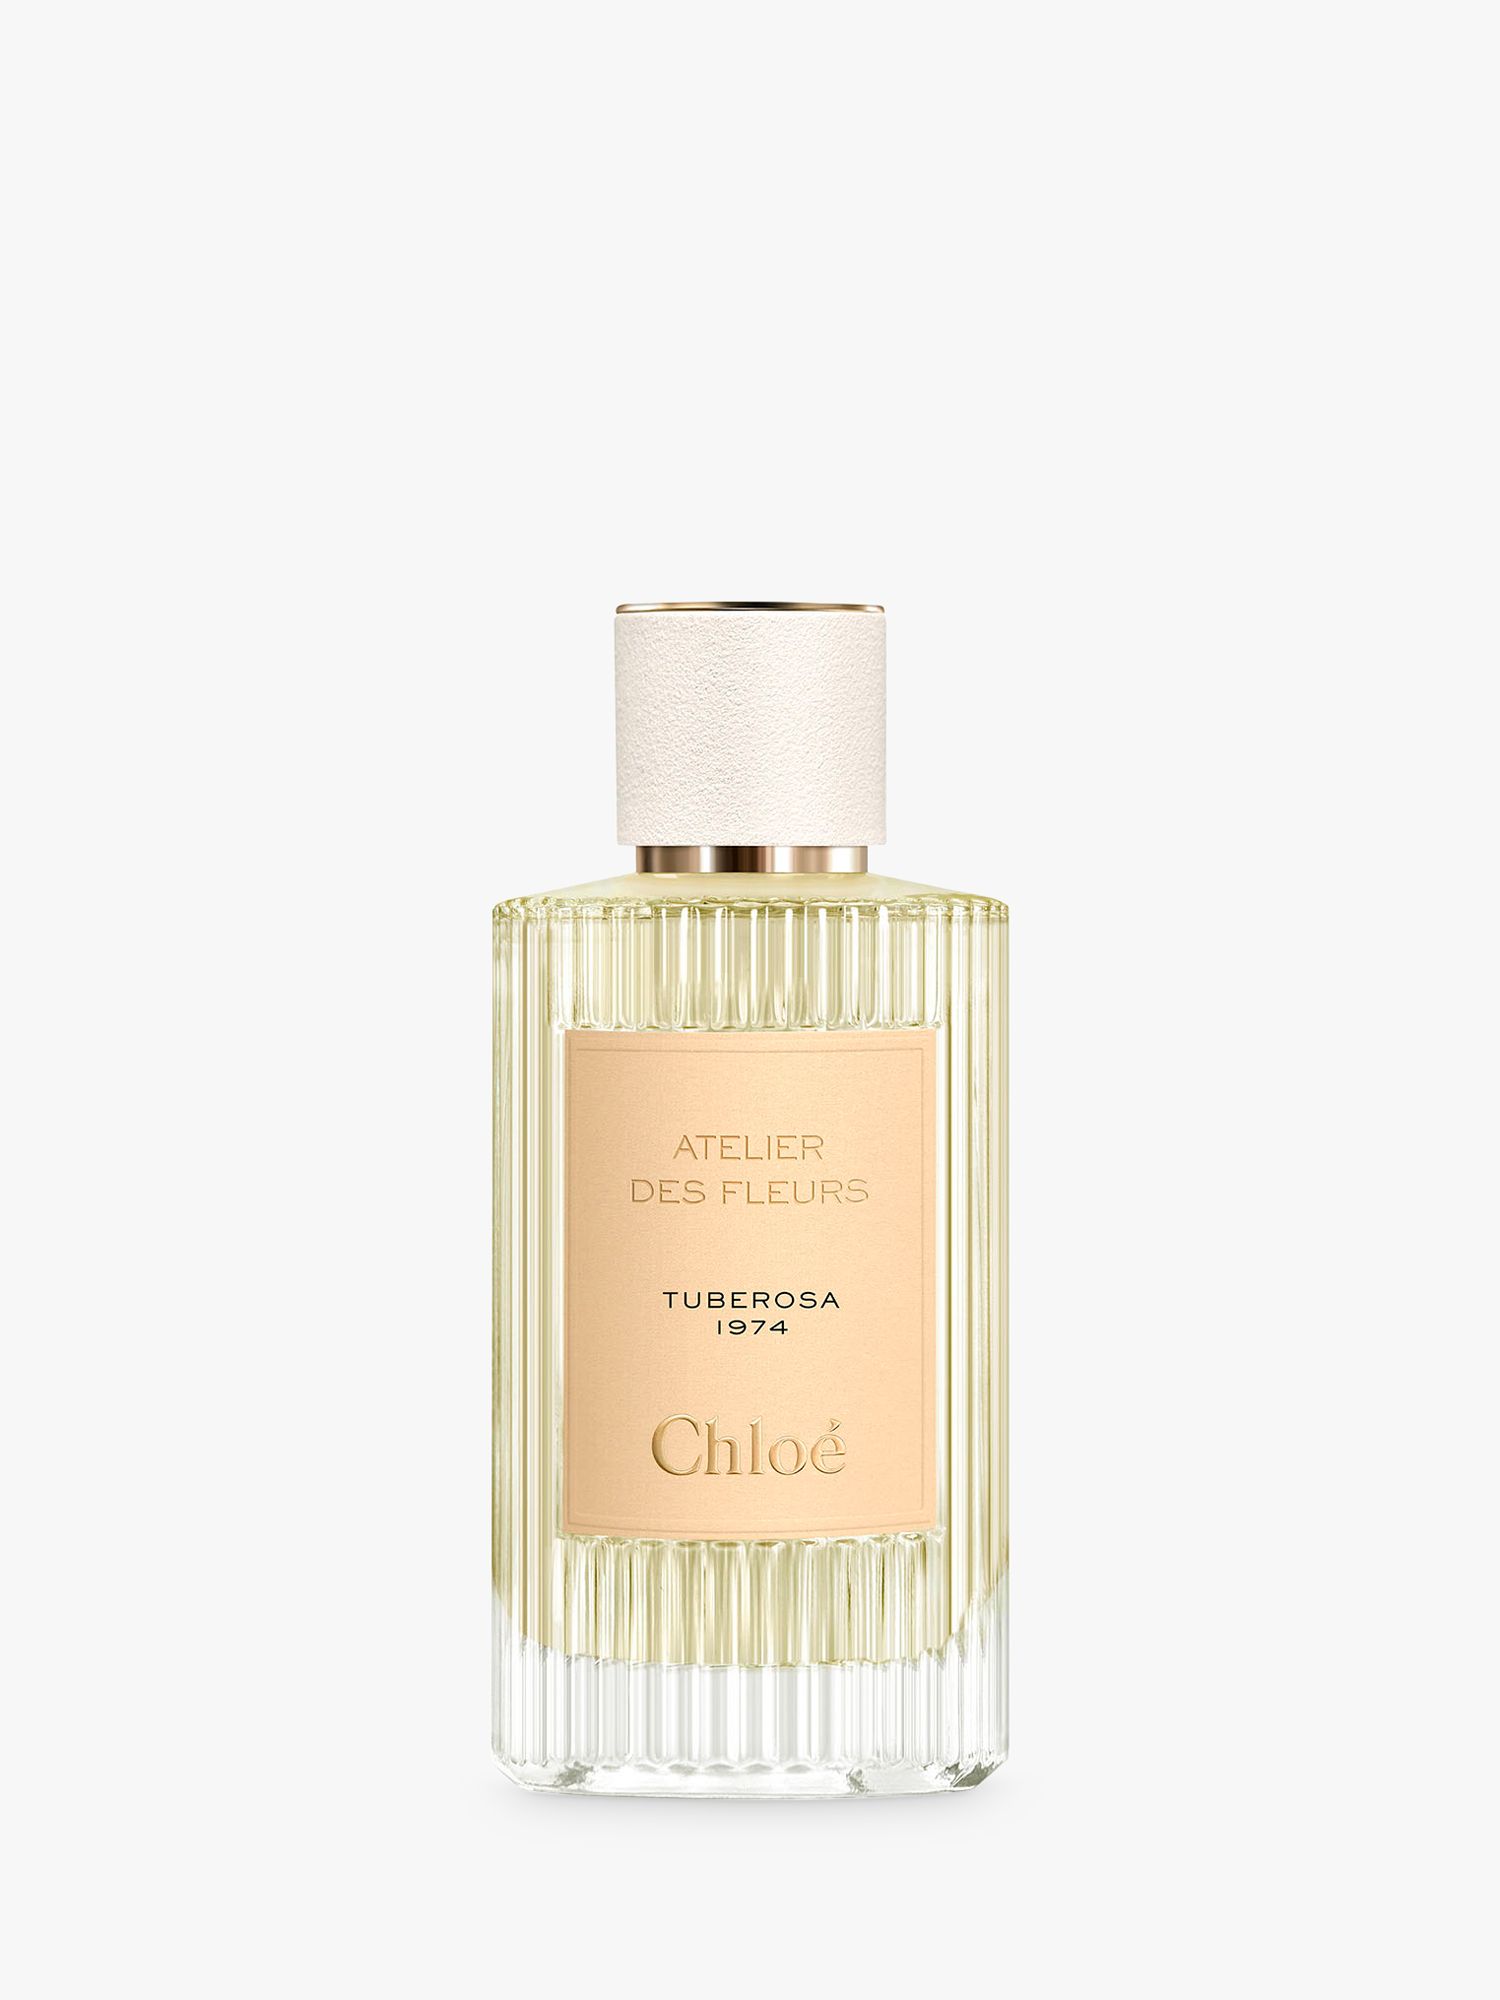 Chloé Atelier des Fleurs Tuberosa 1974 Eau de Parfum, 150ml 1